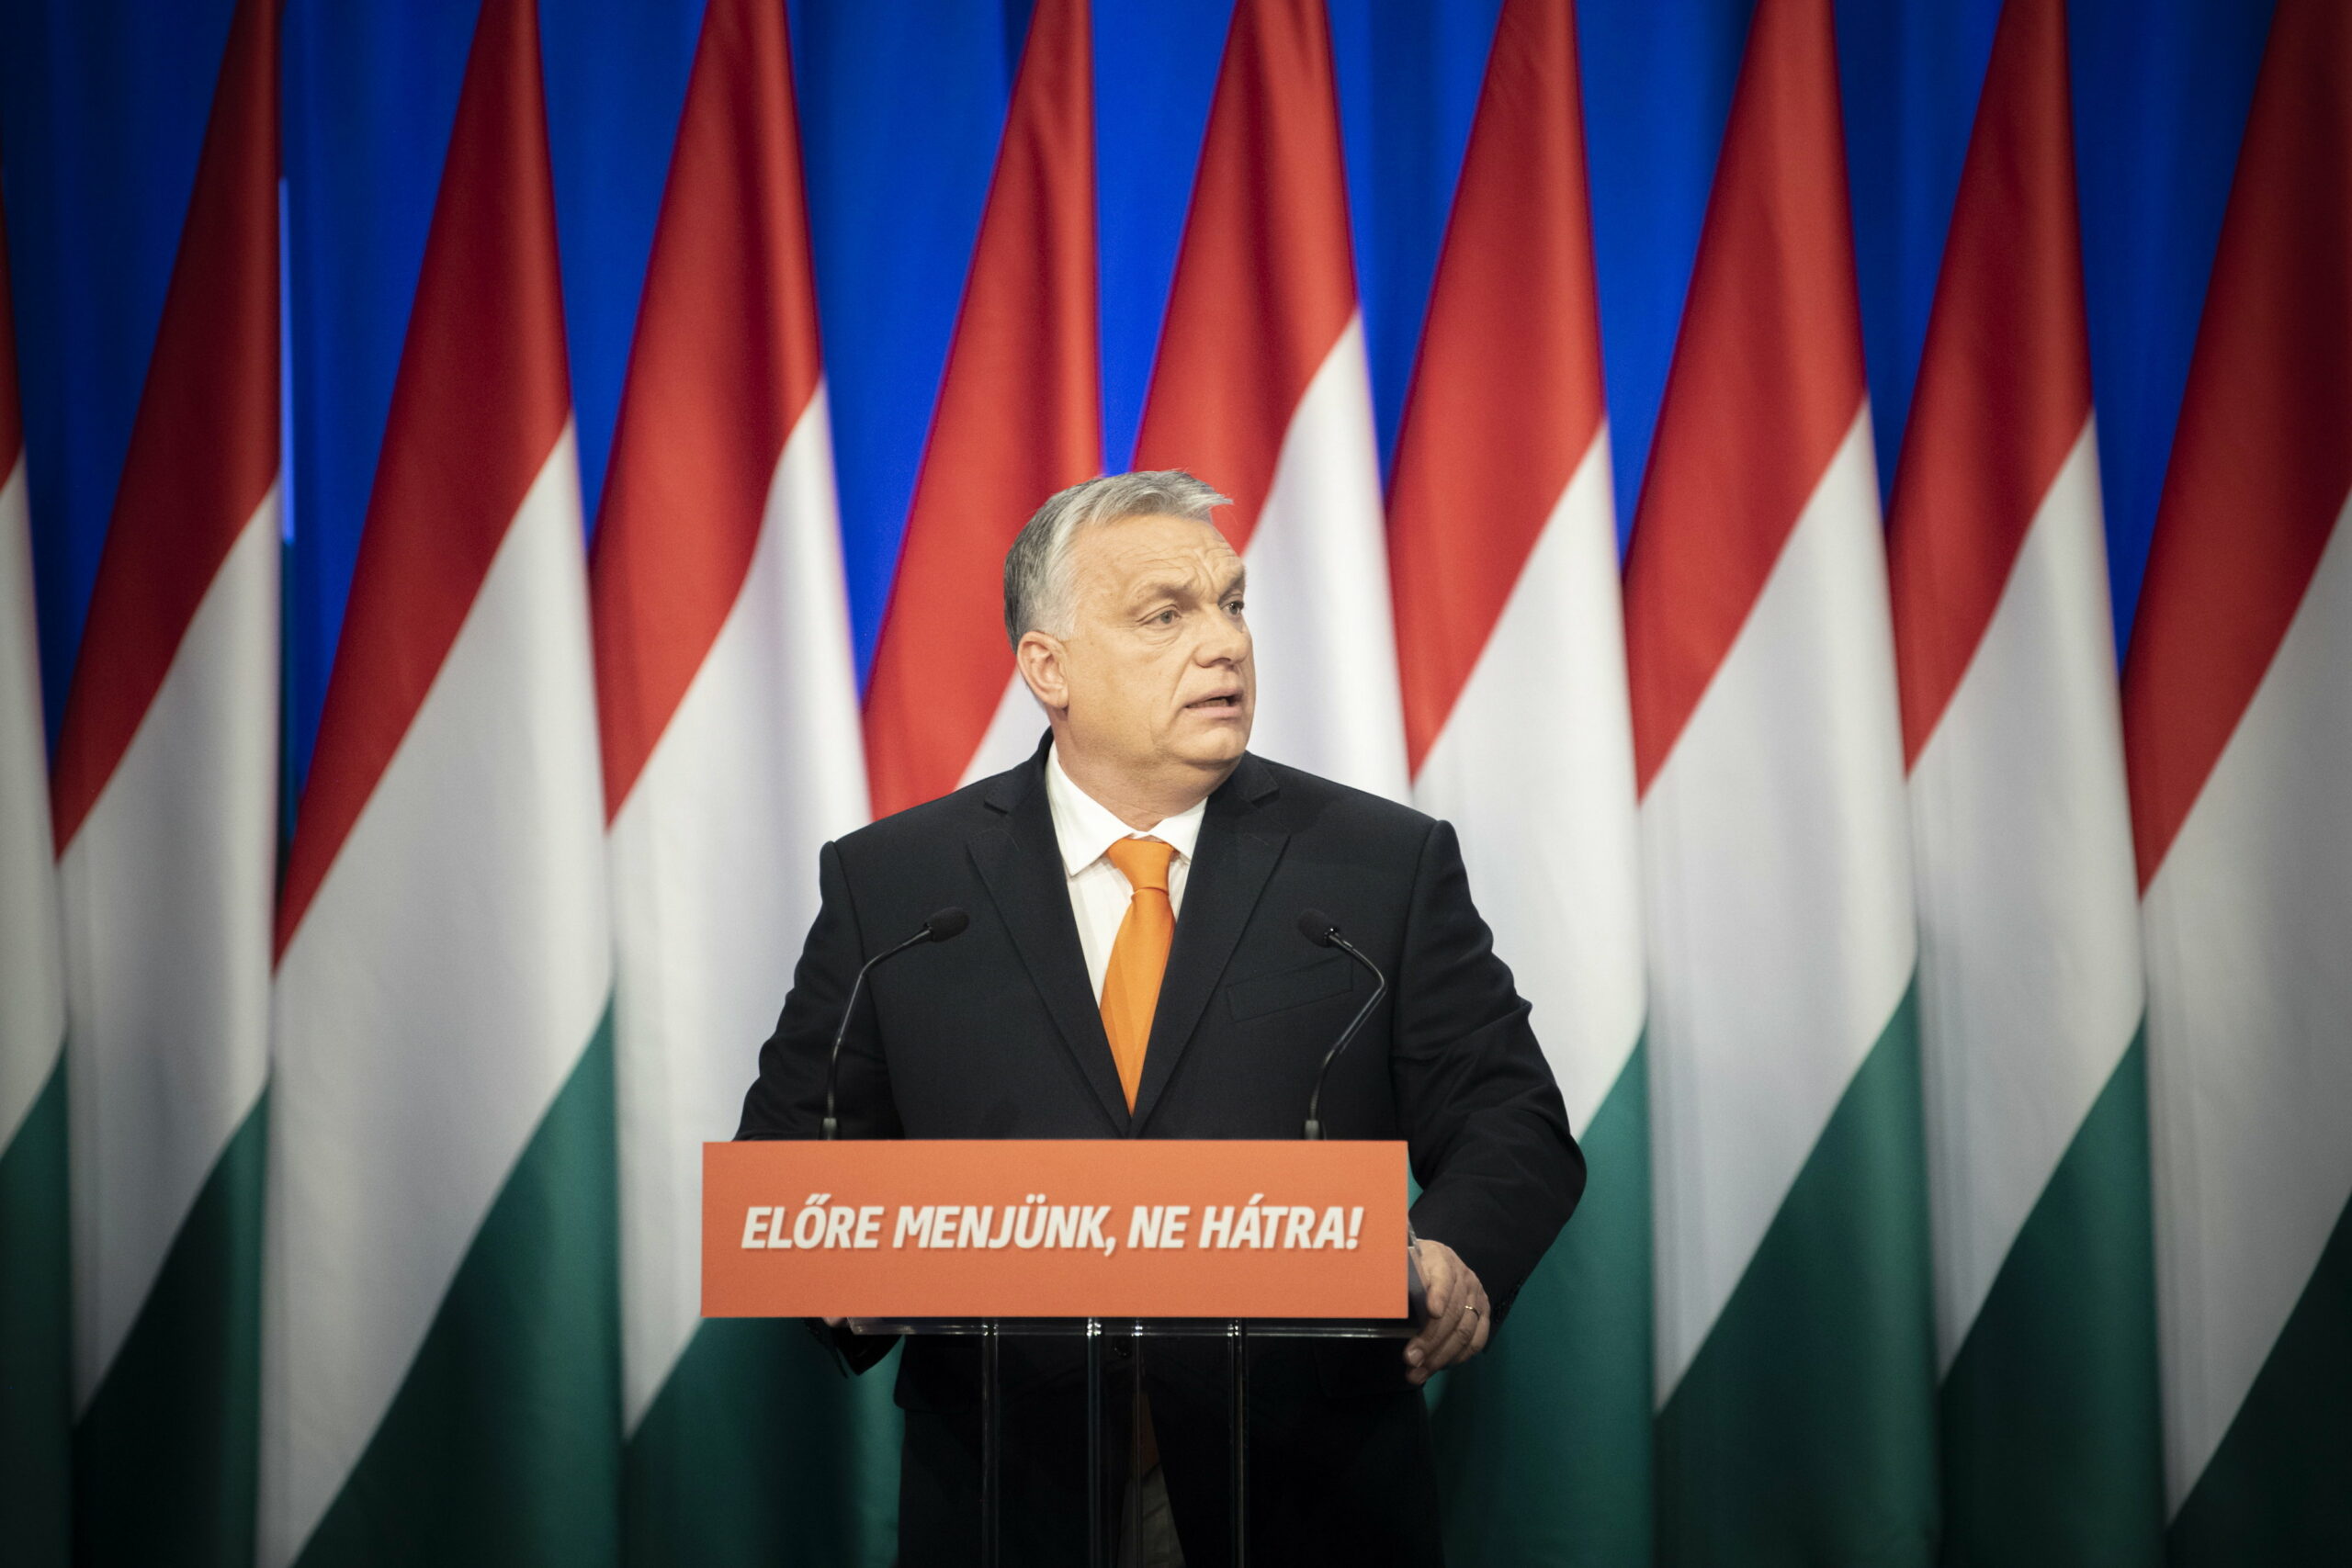 Zwei Wochen vor den Wahlen: Fidesz klarer Favorit, Orbáns Beliebtheit steigt